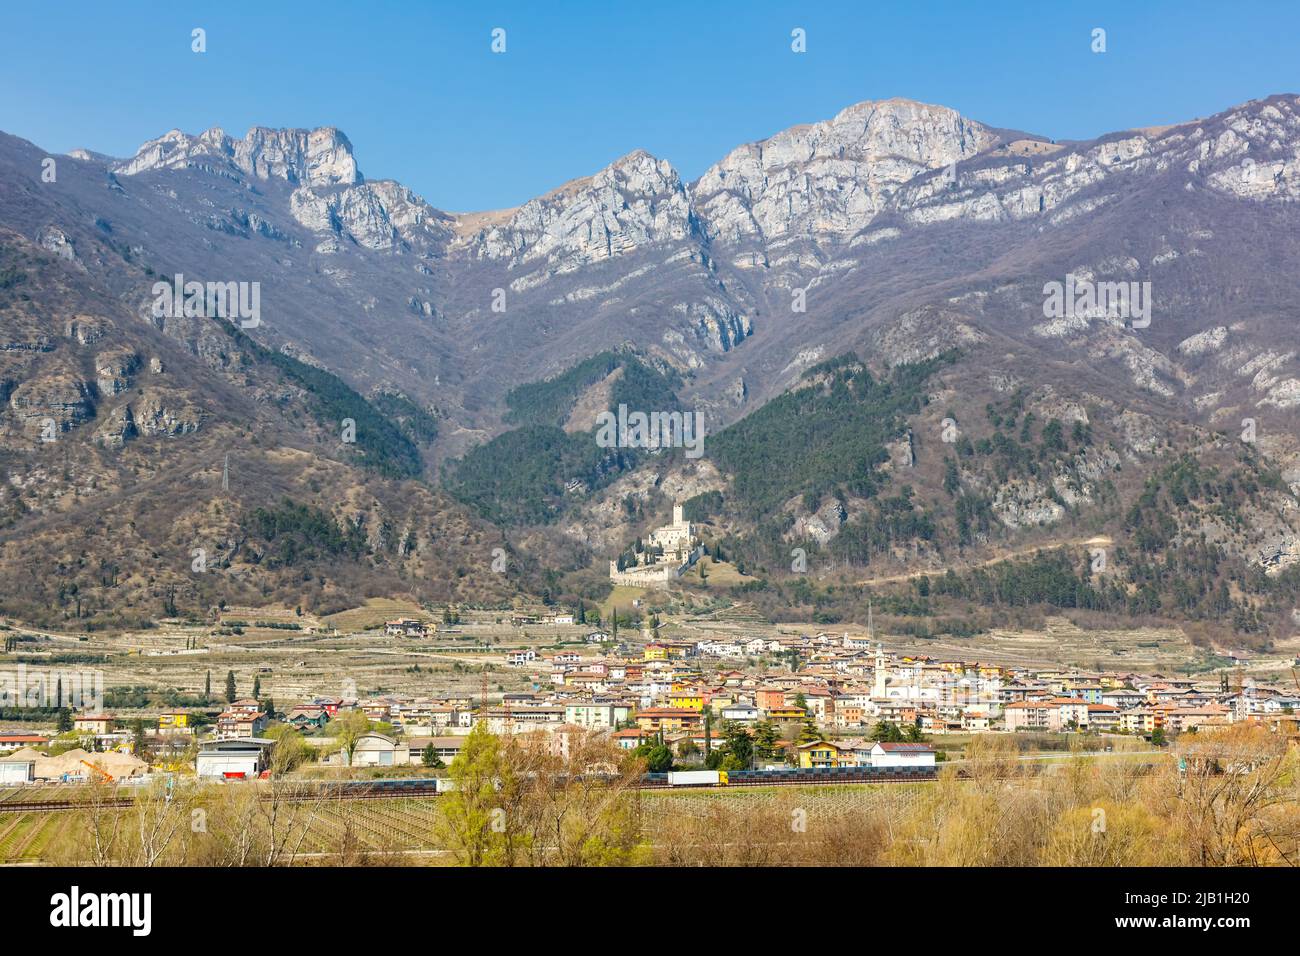 Castello di Avio castle landscape scenery Trento province region Alps mountains in Italy Stock Photo